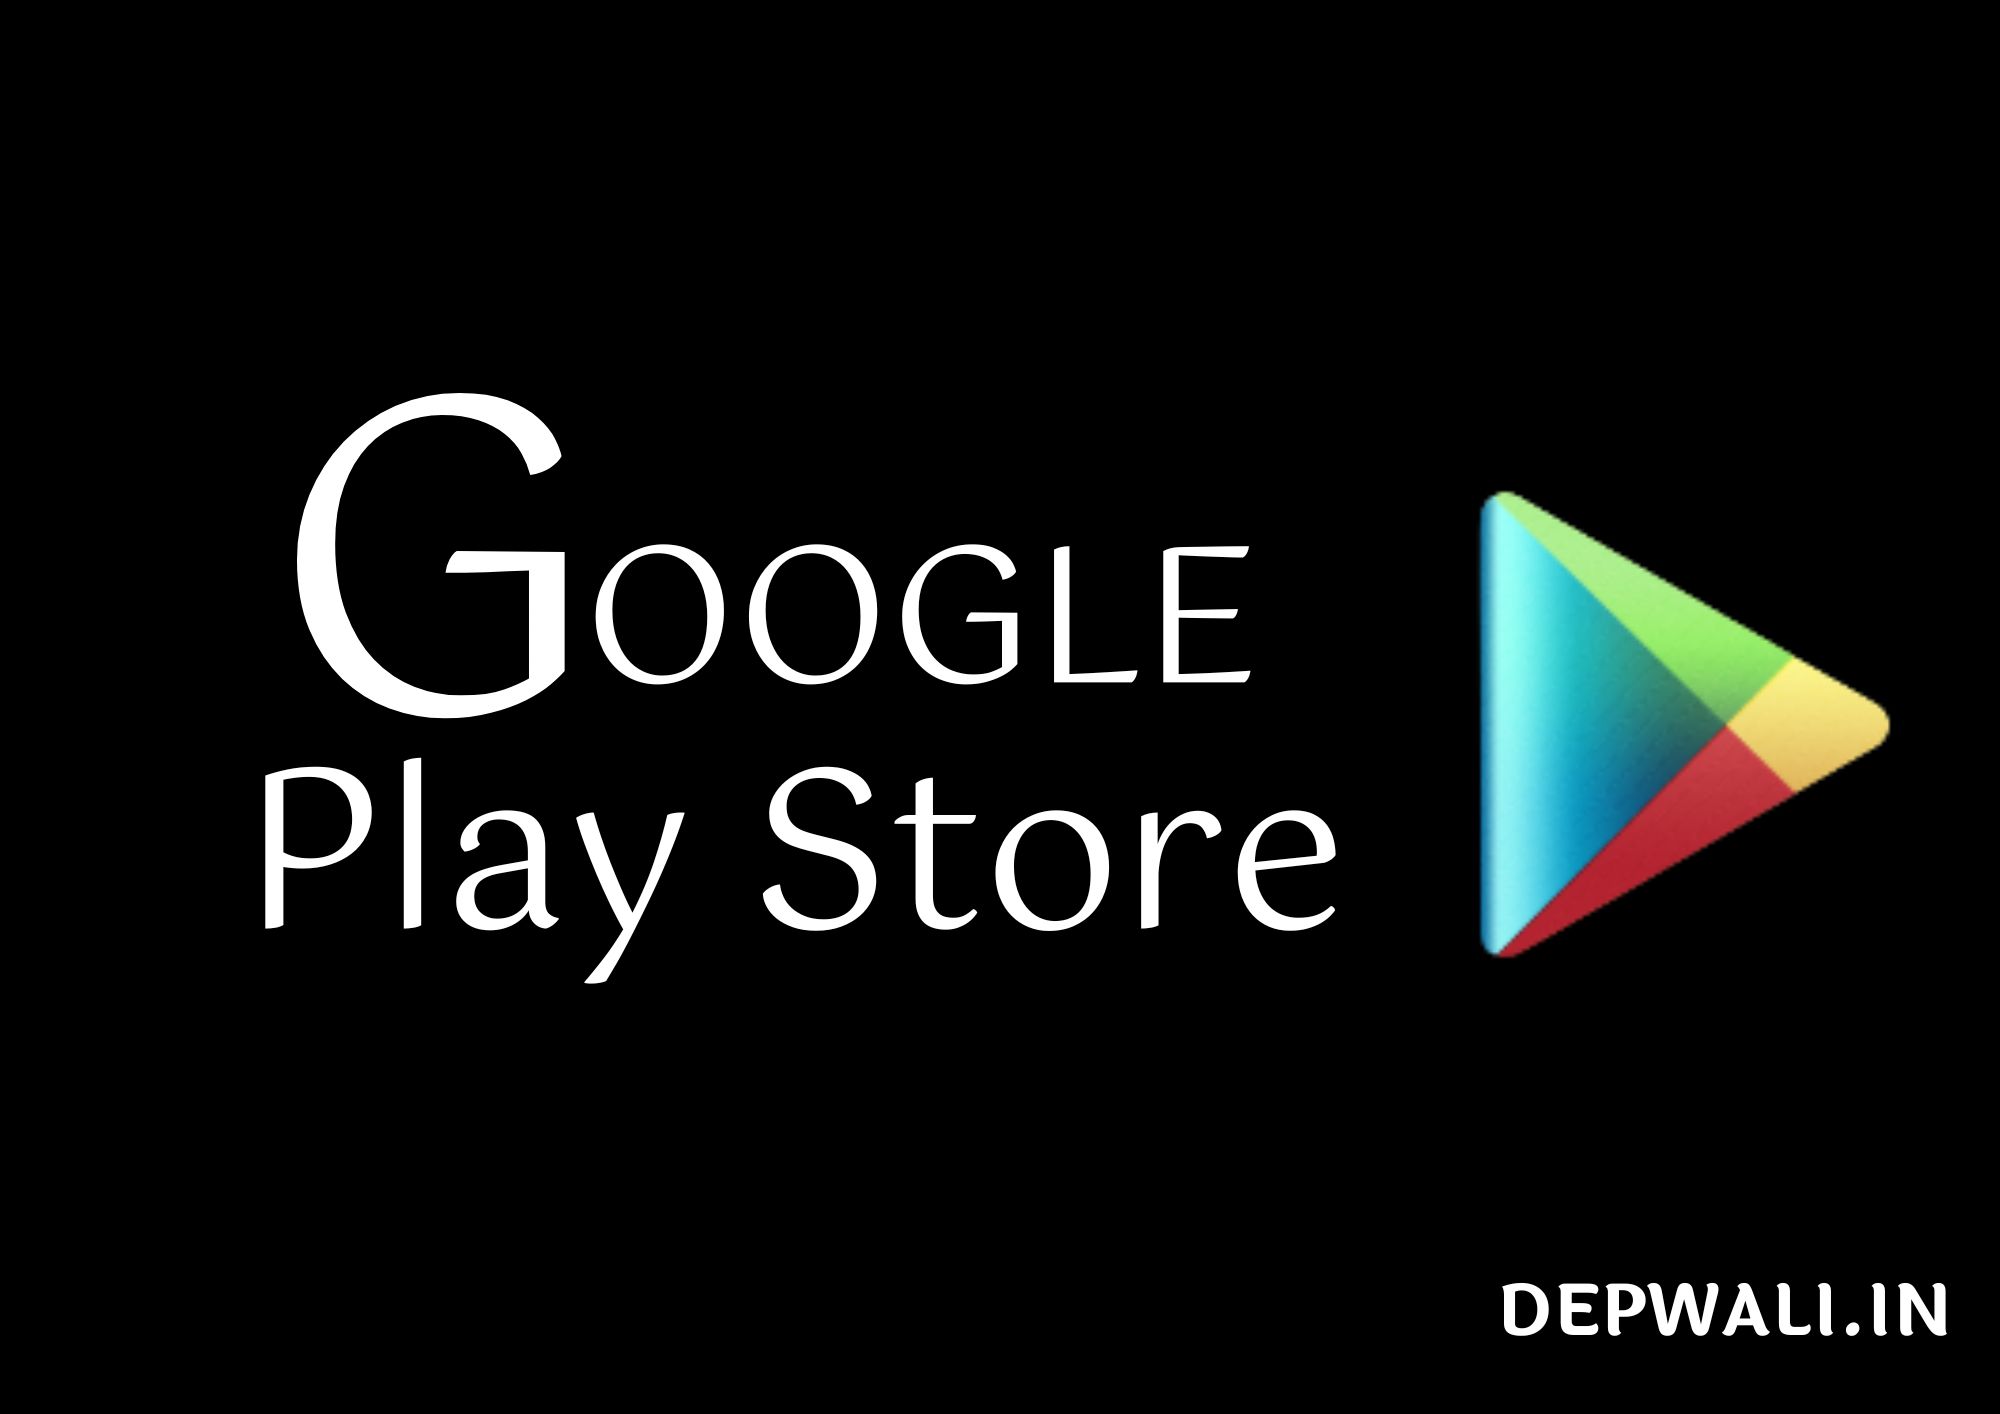 गूगल प्ले स्टोर डाउनलोड करना है (Google Play Store Download Karna Hai)